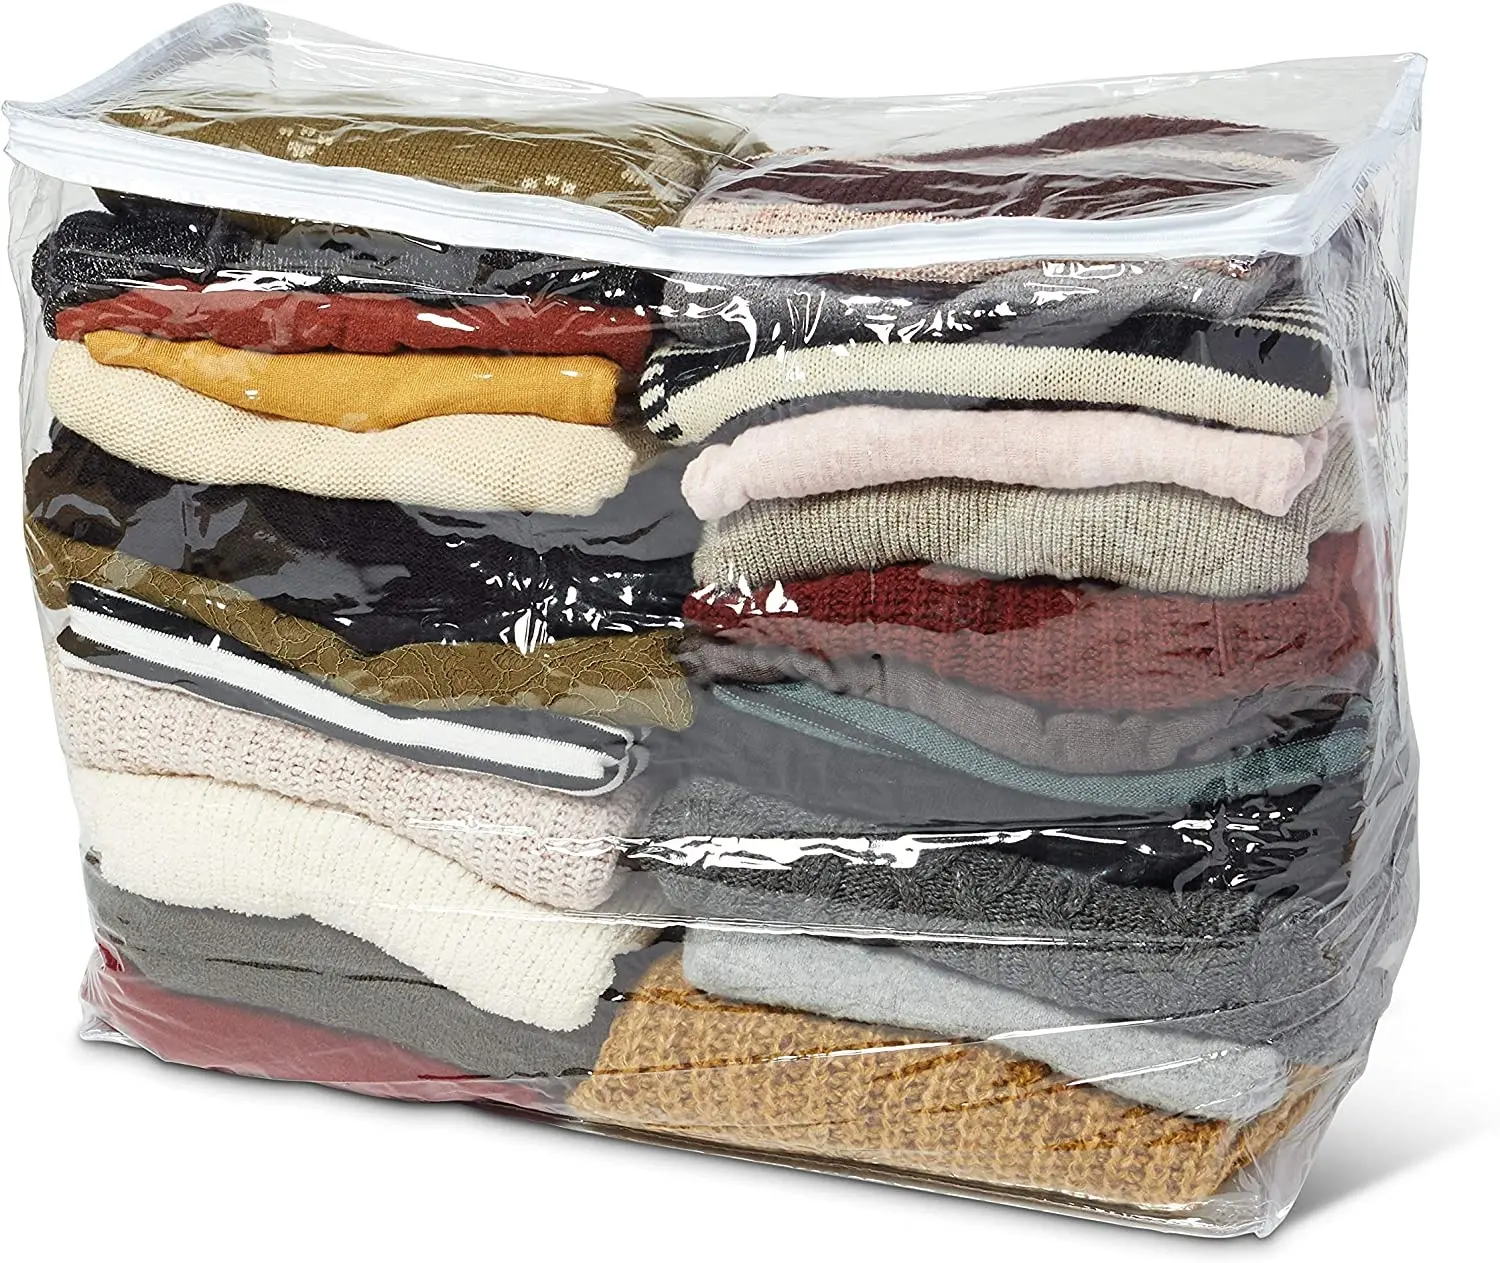 ถุงเก็บเสื้อผ้าแบบใสมีซิปล็อค PVC,ถุงเก็บผ้าห่มสำหรับเดินทางกระเป๋าจัดระเบียบแบบพกพาผ้าห่มสำหรับเดินทางกระเป๋าเก็บของสั่งทำได้